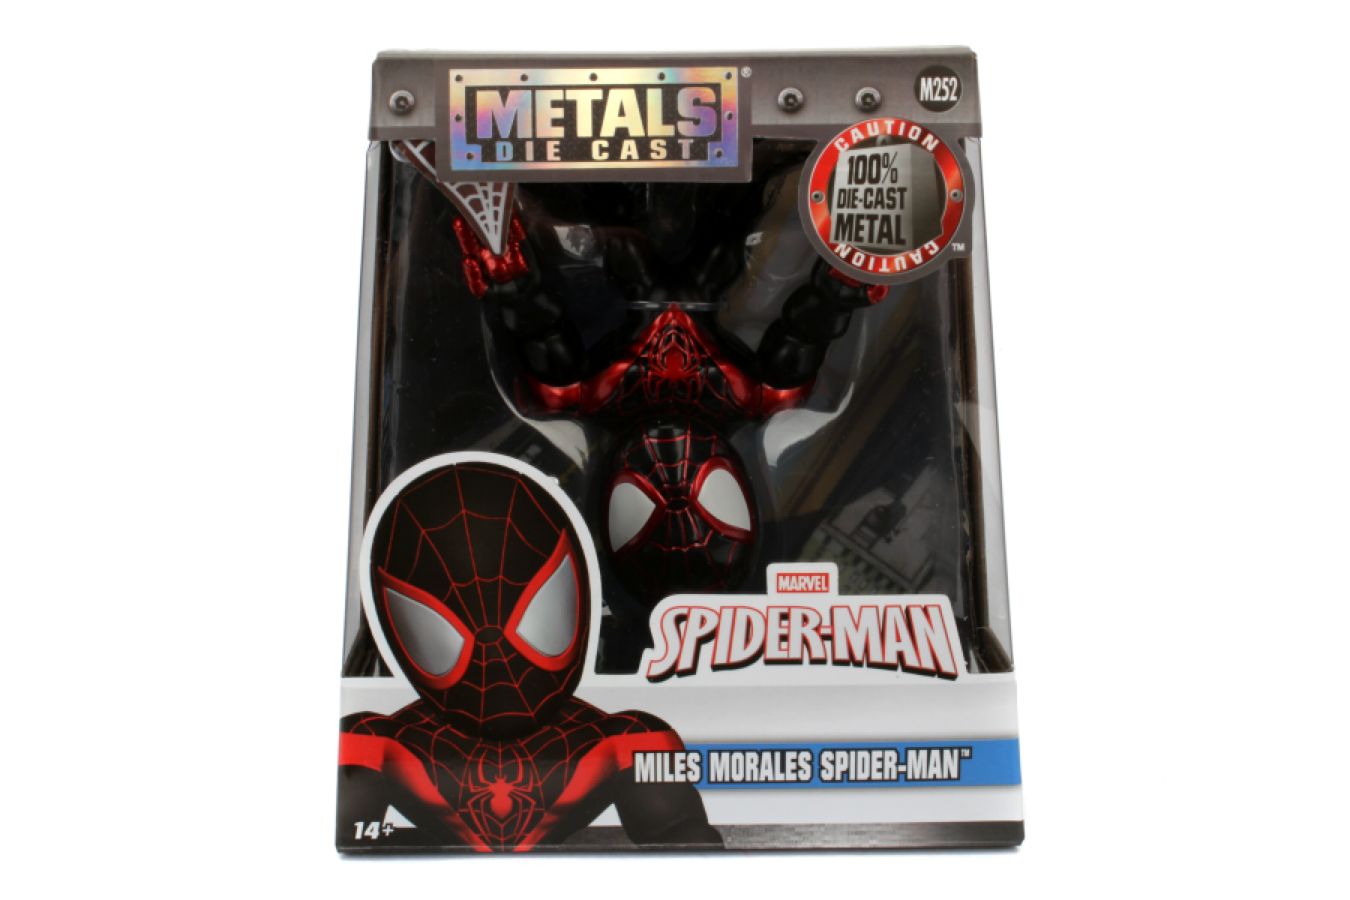 Spider-Man - Miles Morales 4" Diecast Metalfig